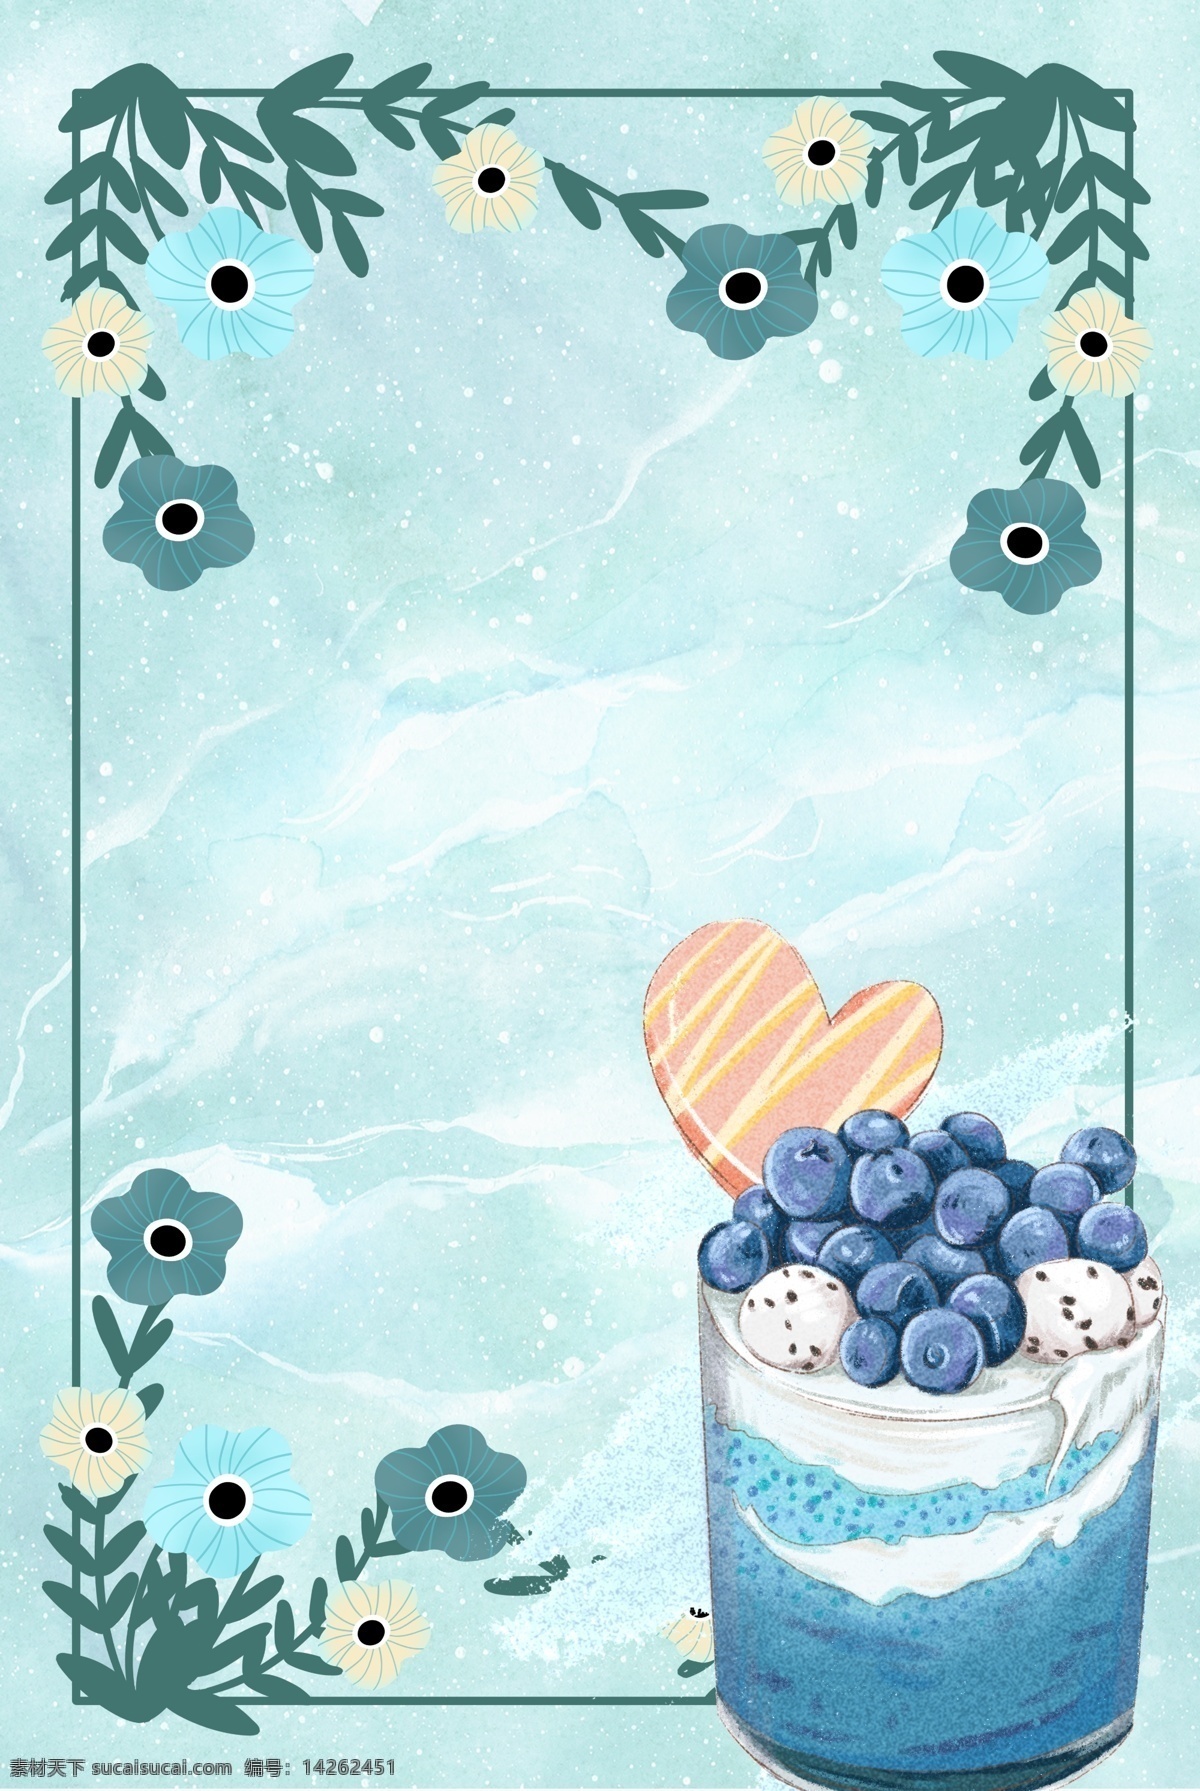 夏季 冰 饮 冰淇淋 背景 夏季冰饮 蓝莓冰 雪糕冰淇淋 解暑 夏天 花朵 唯美 美食 冰爽 凉爽